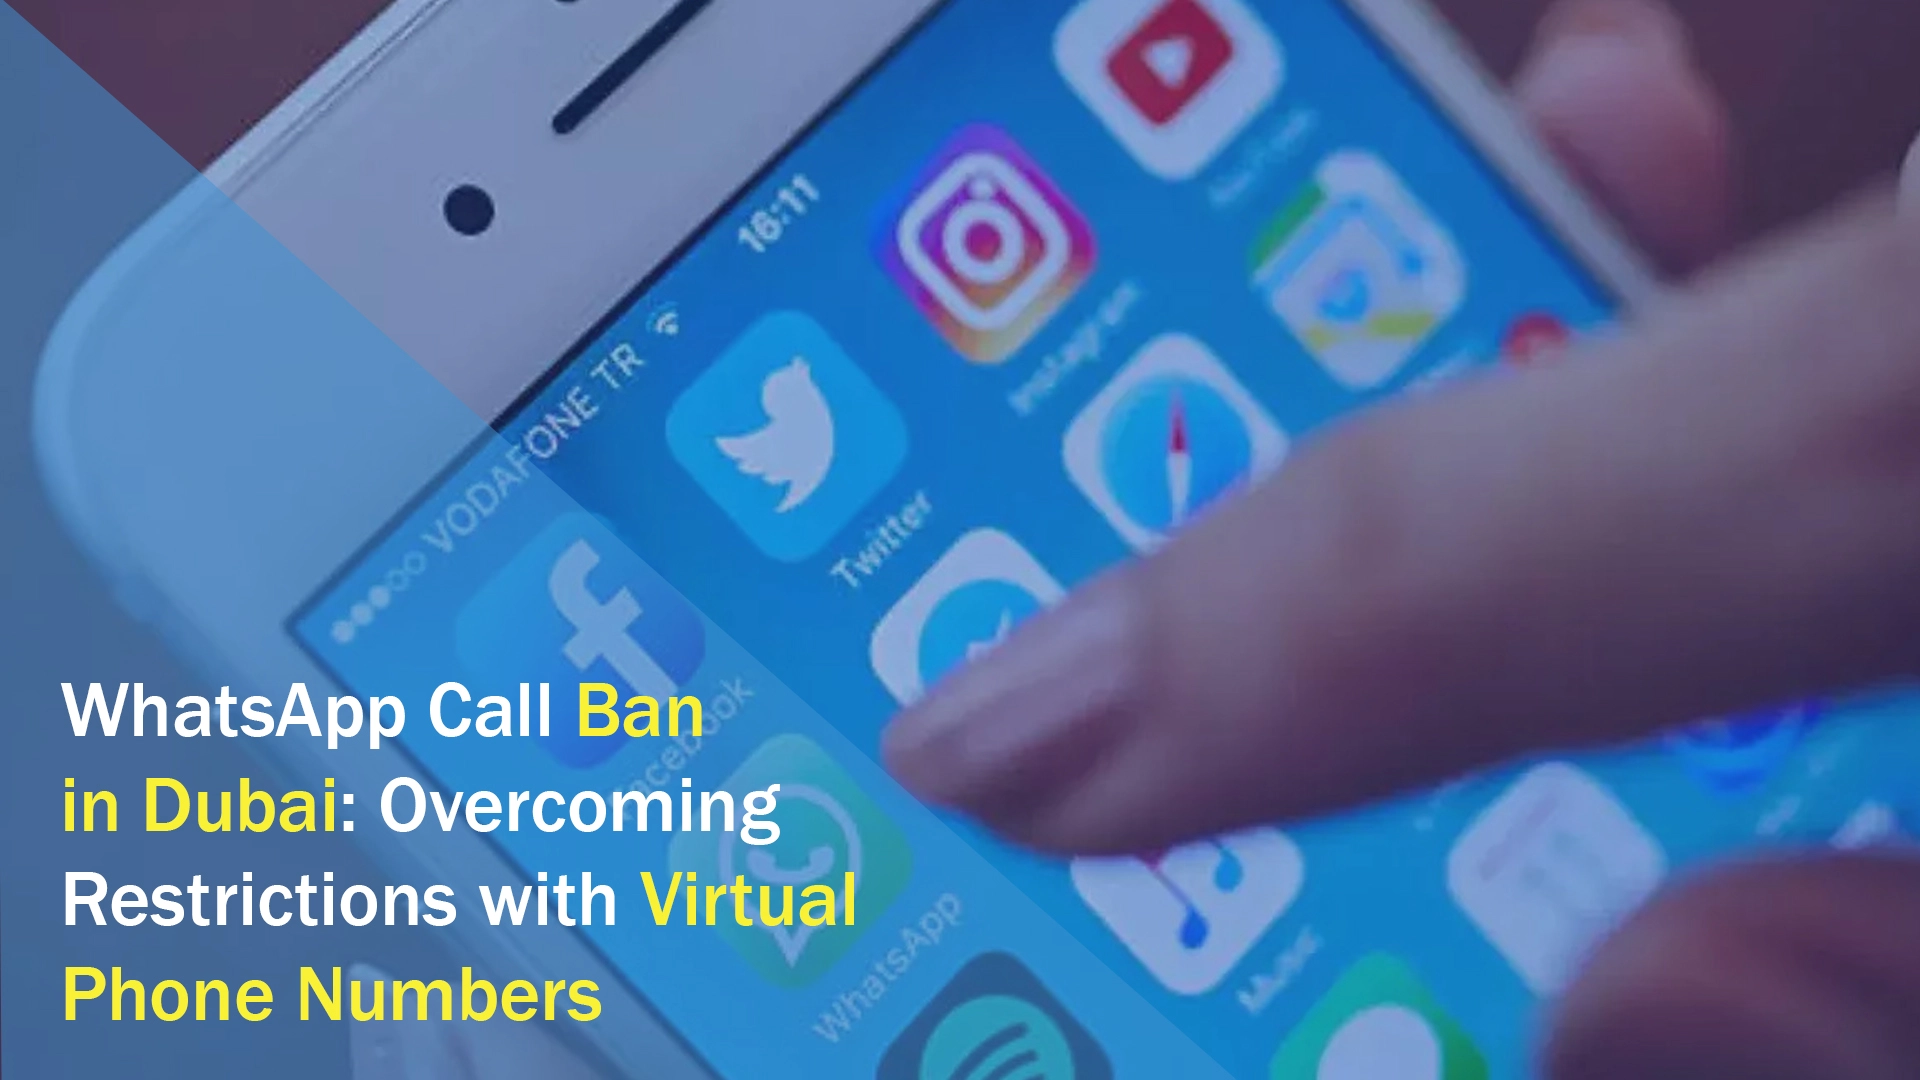 حظر المكالمات عبر الواتس اب في دبي